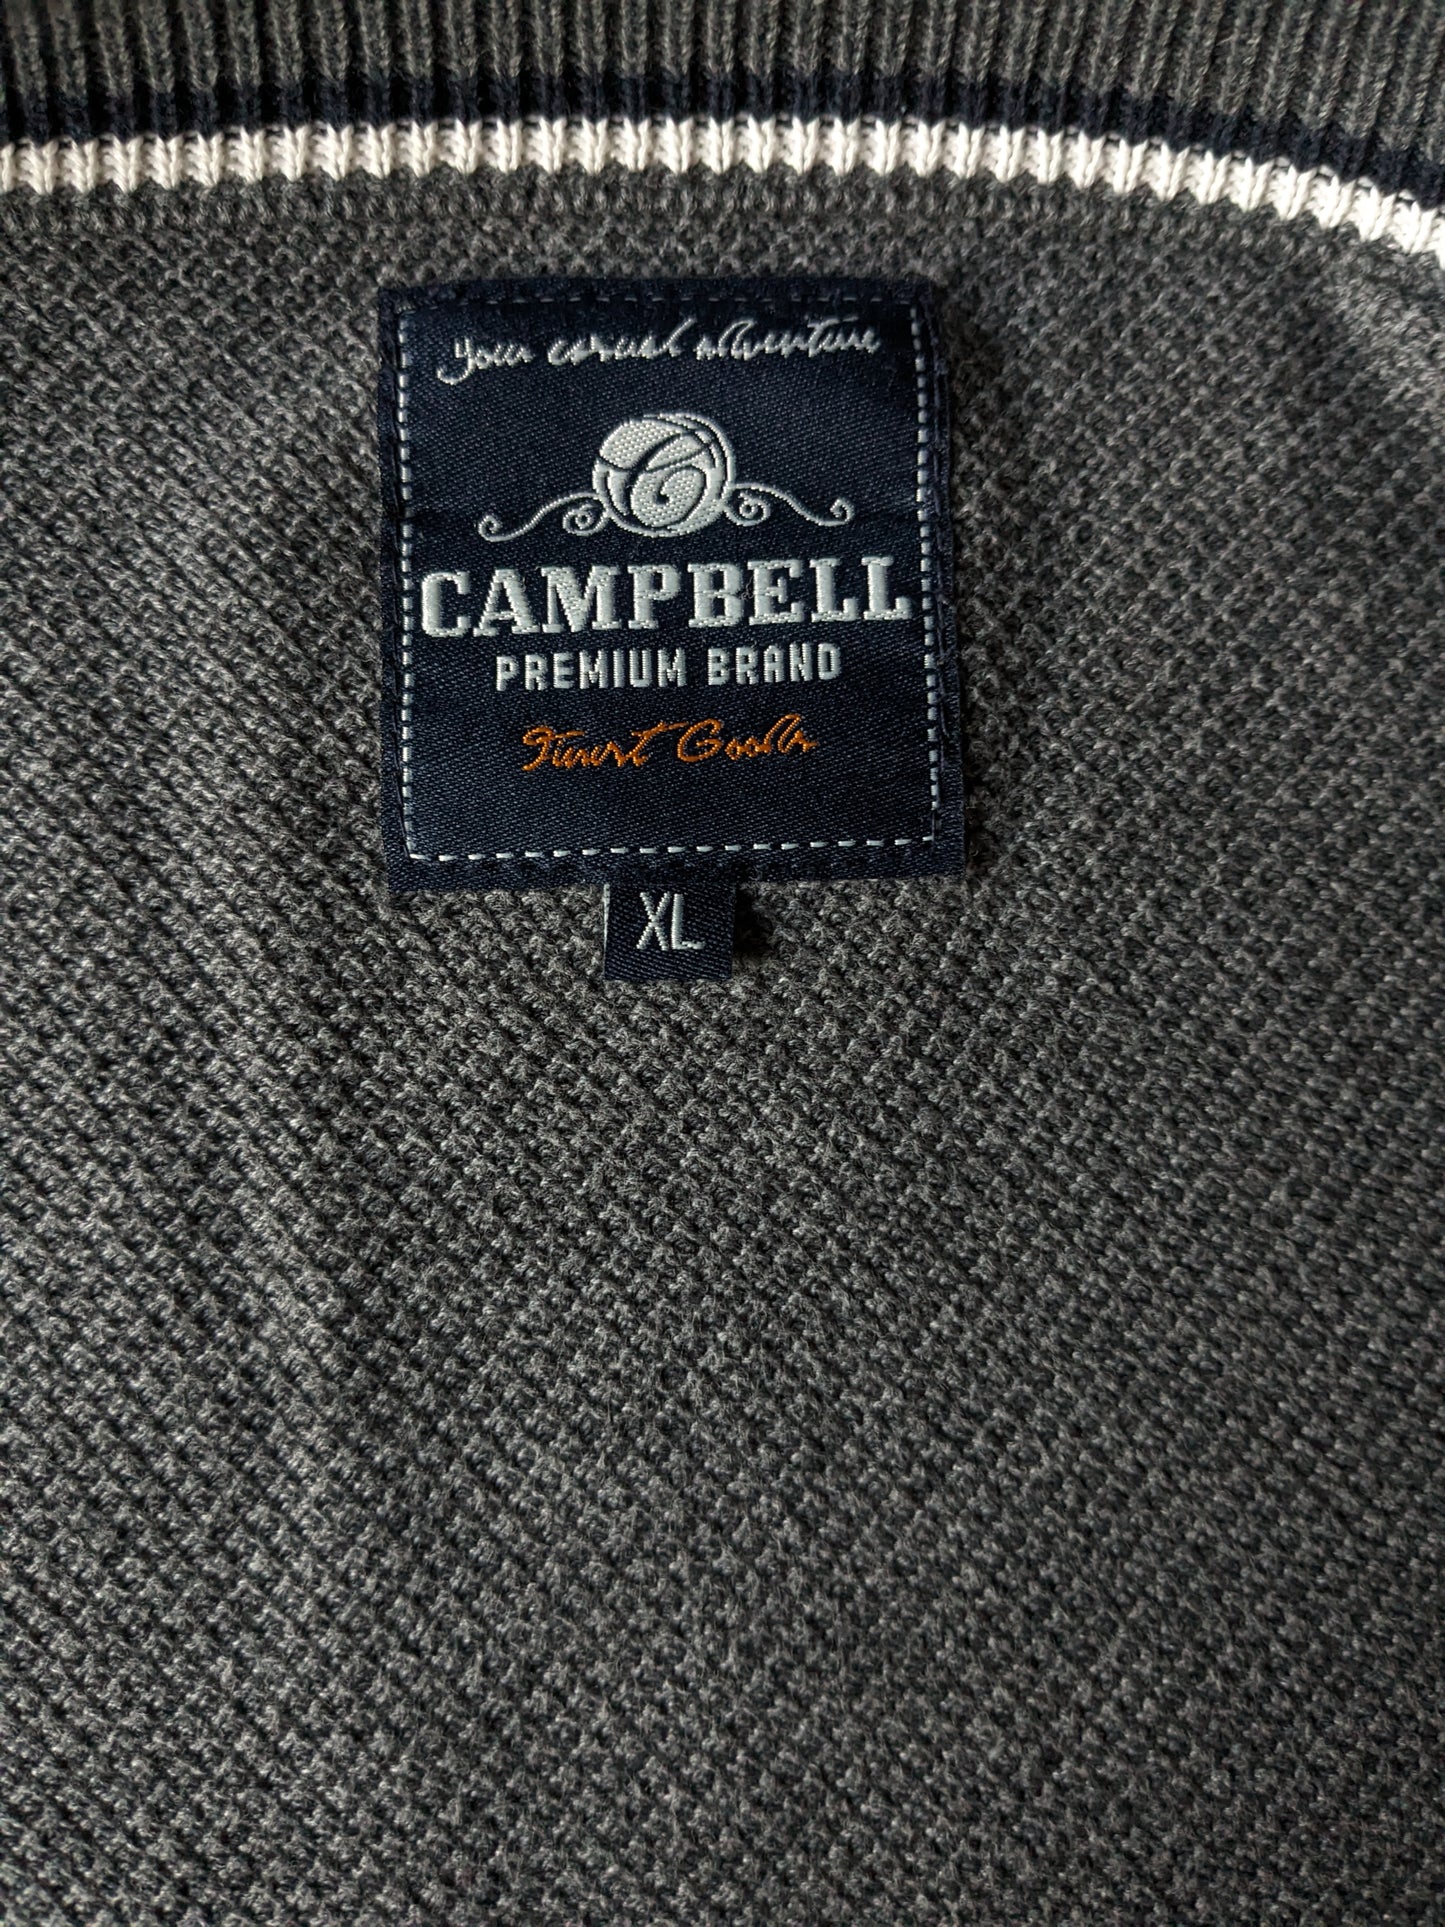 Campbell Gest. Coloré gris foncé. Taille xl.